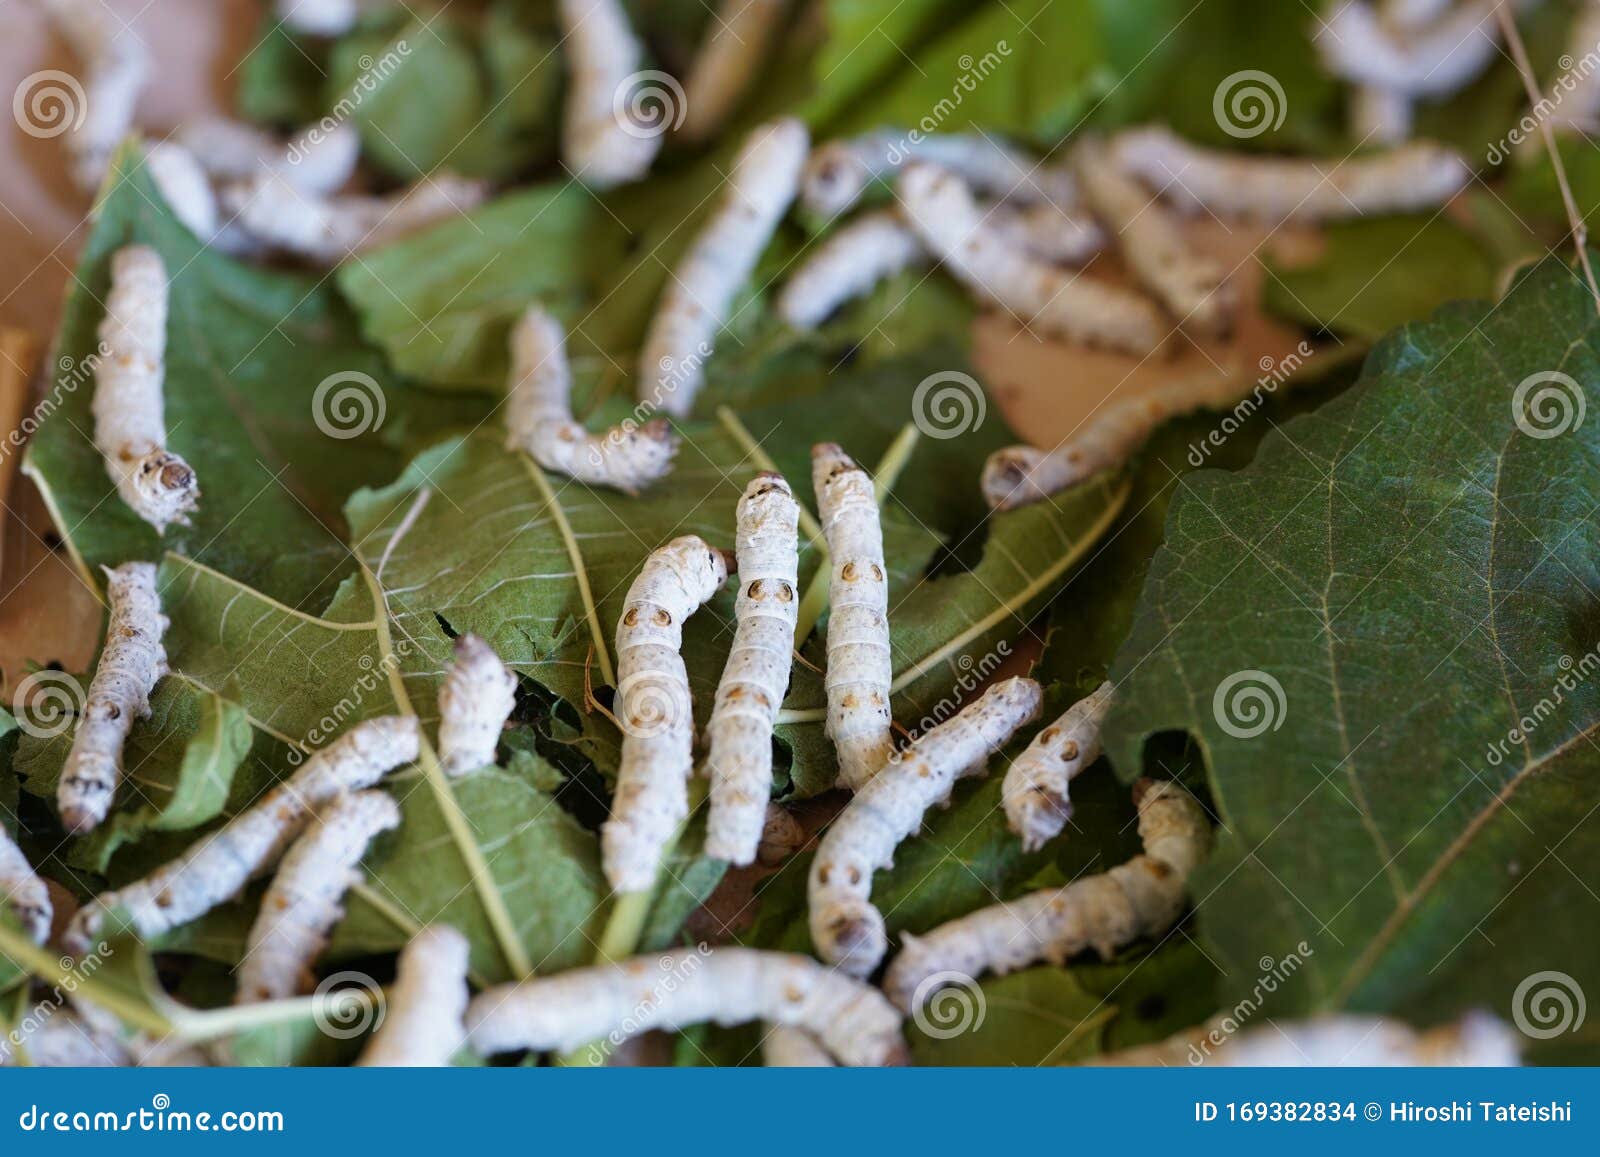 蚕桑蚕库存照片 图片包括有毛虫 桑树 昆虫 纱线 空白 叶子 黄色 桑蚕 丝绸